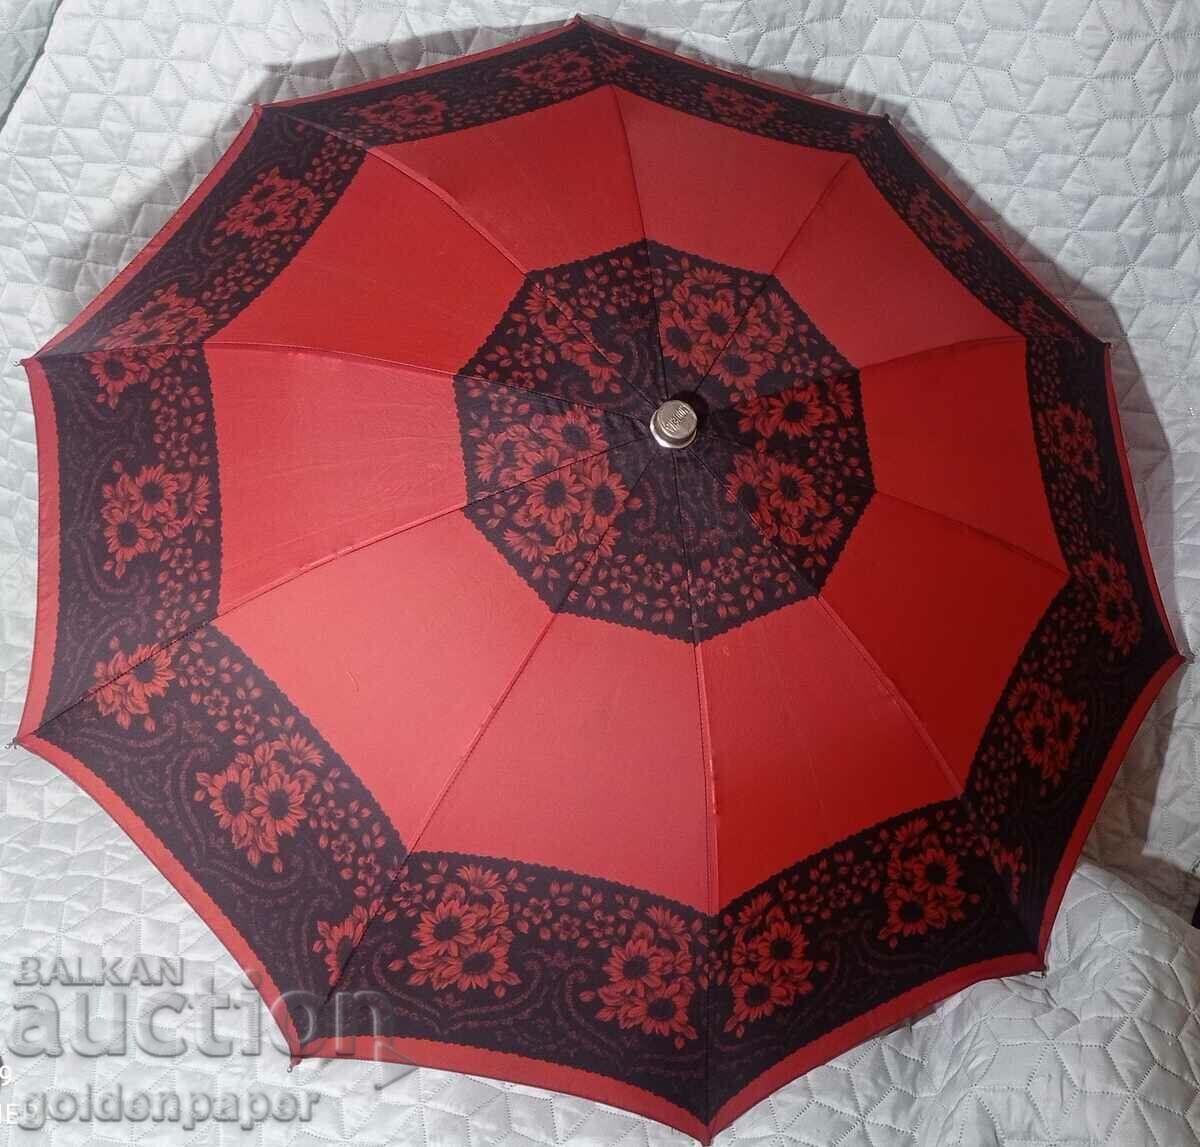 German Umbrella Modena